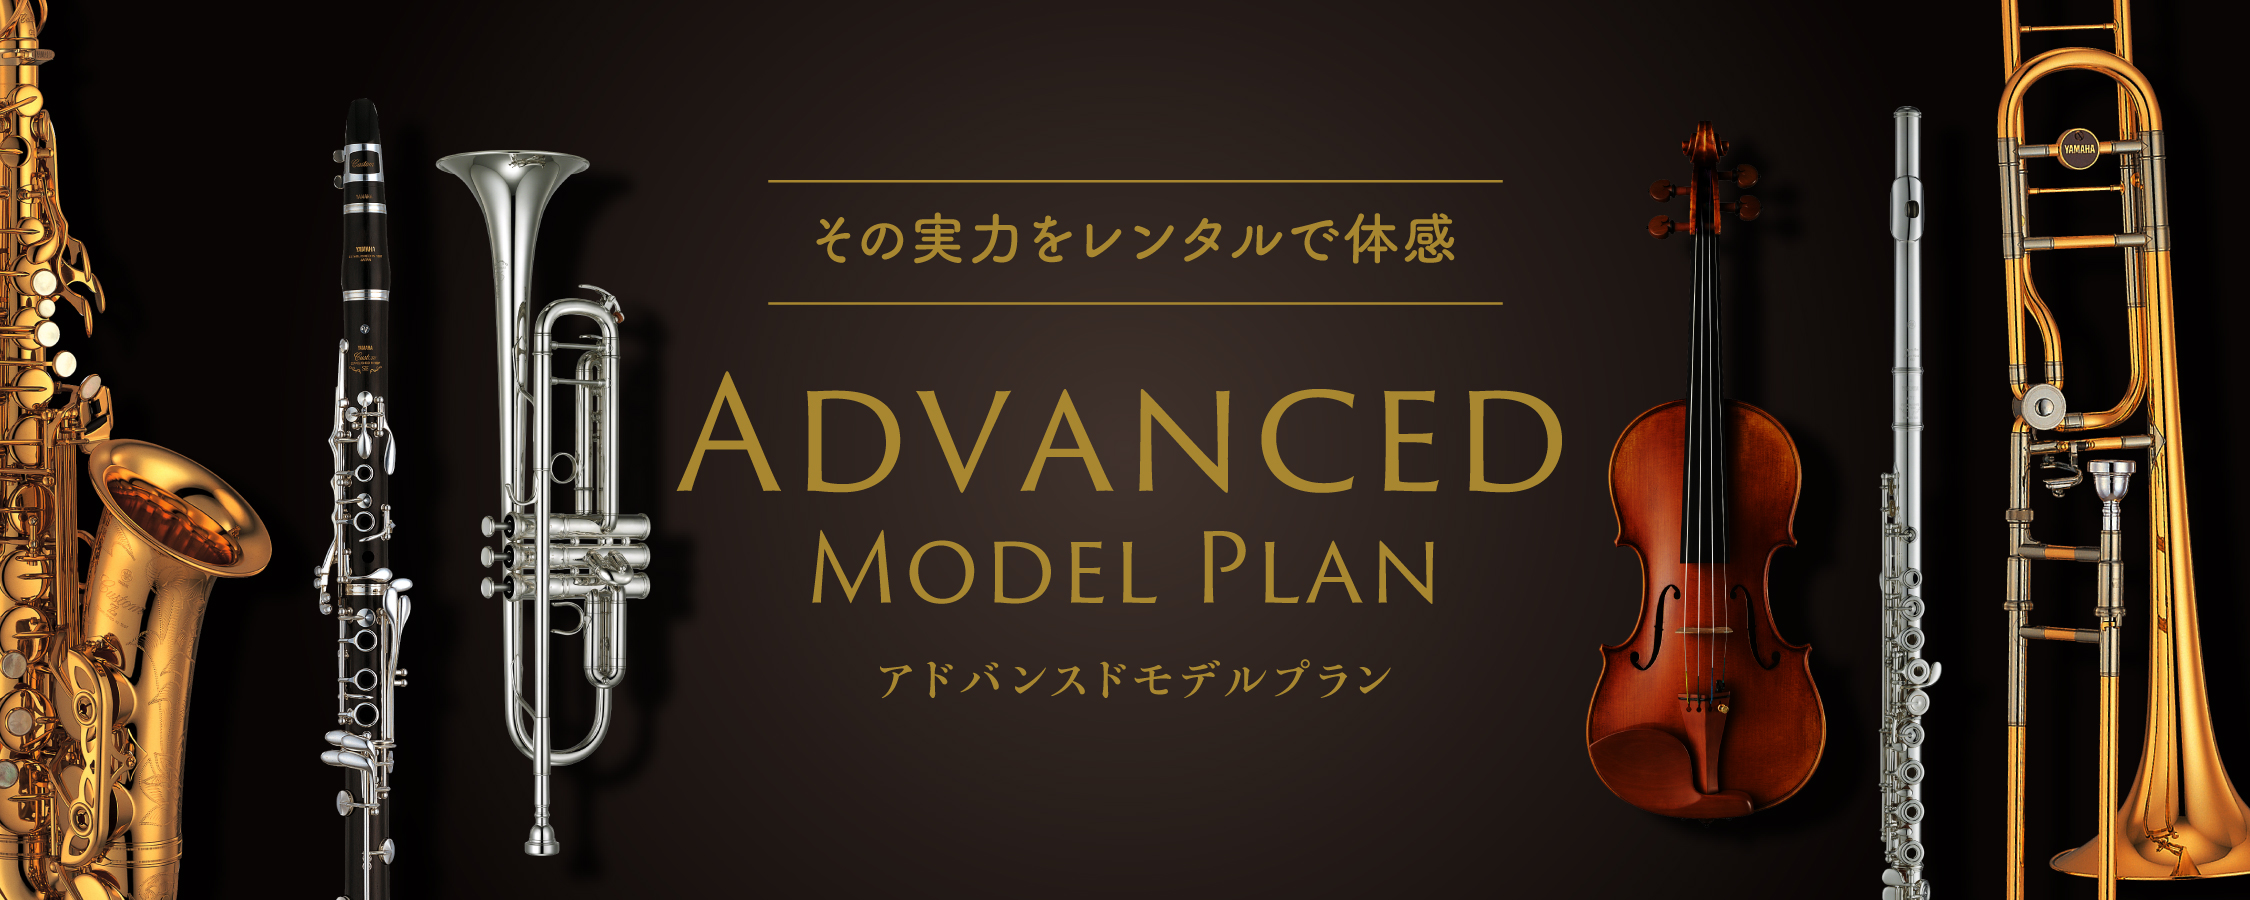 ヤマハ管弦楽器の上級機種をレンタル 「Advanced Model Plan (アドバンスドモデルプラン」